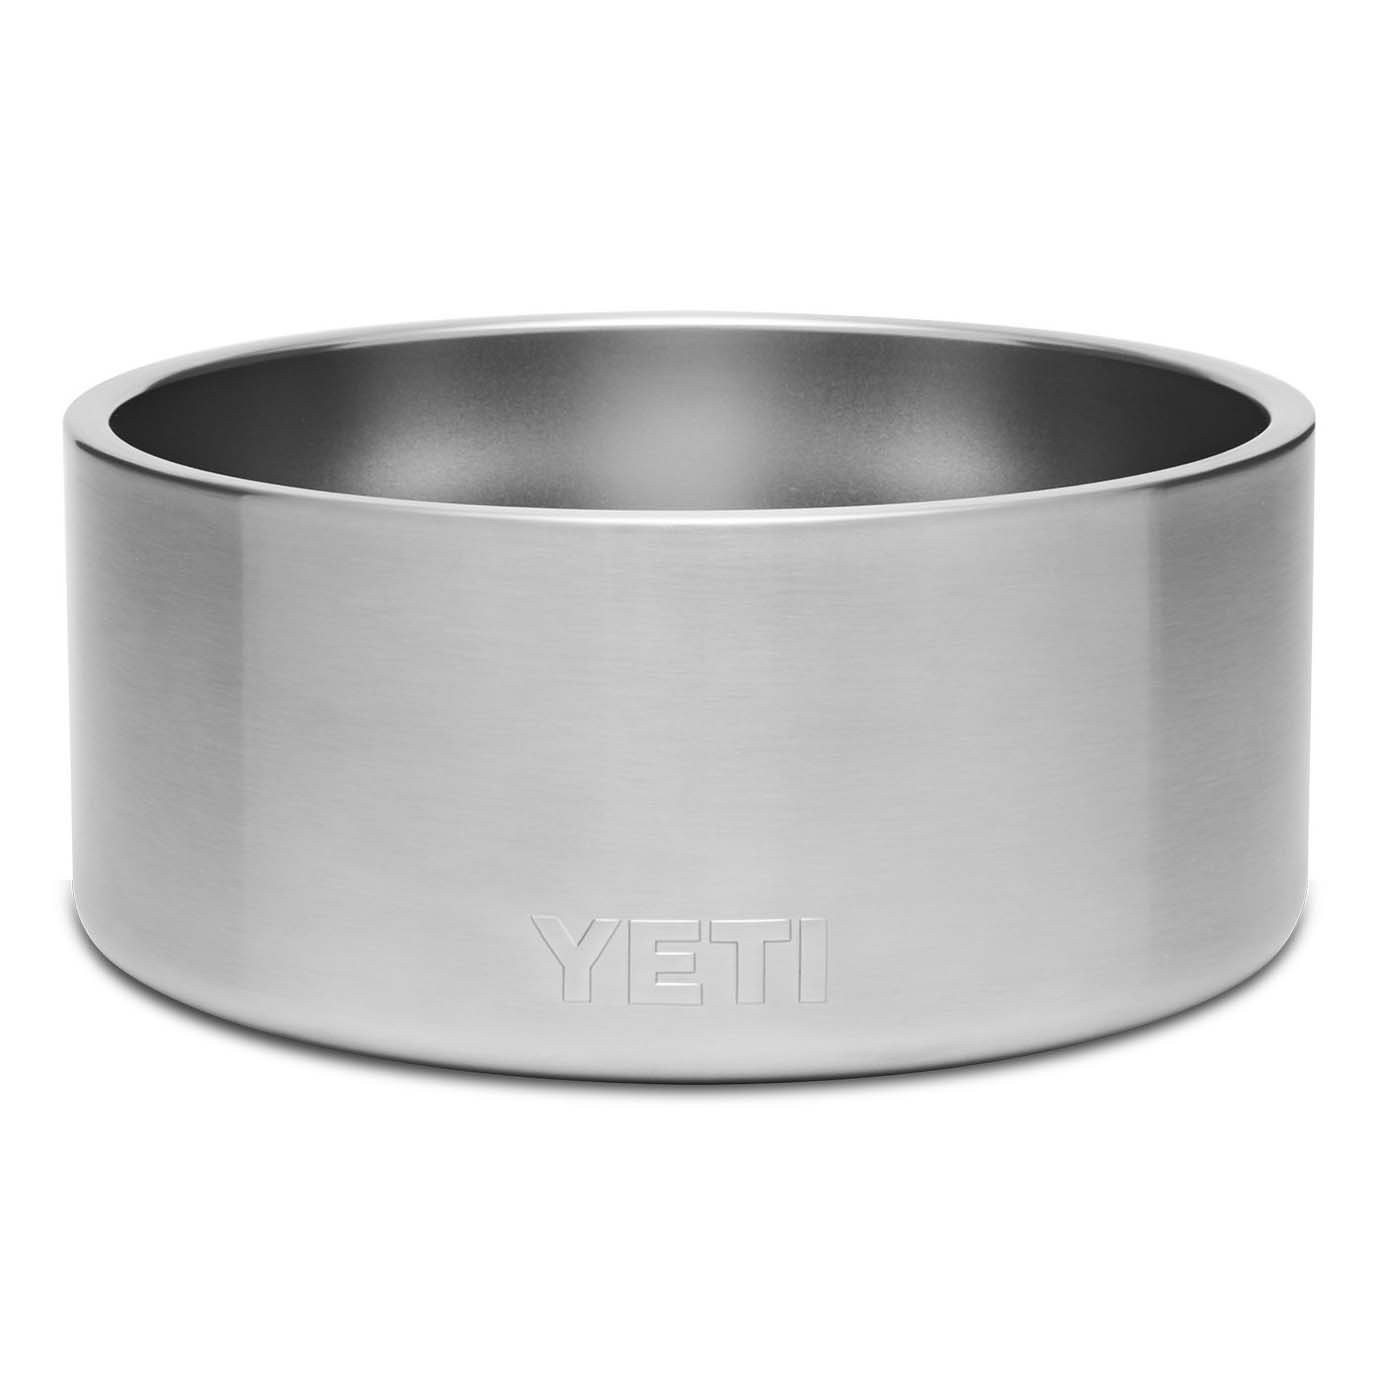 Yeti Boomer 4 Dog Bowl-Accessories-Yeti-Stainless Steel-Fishing Station